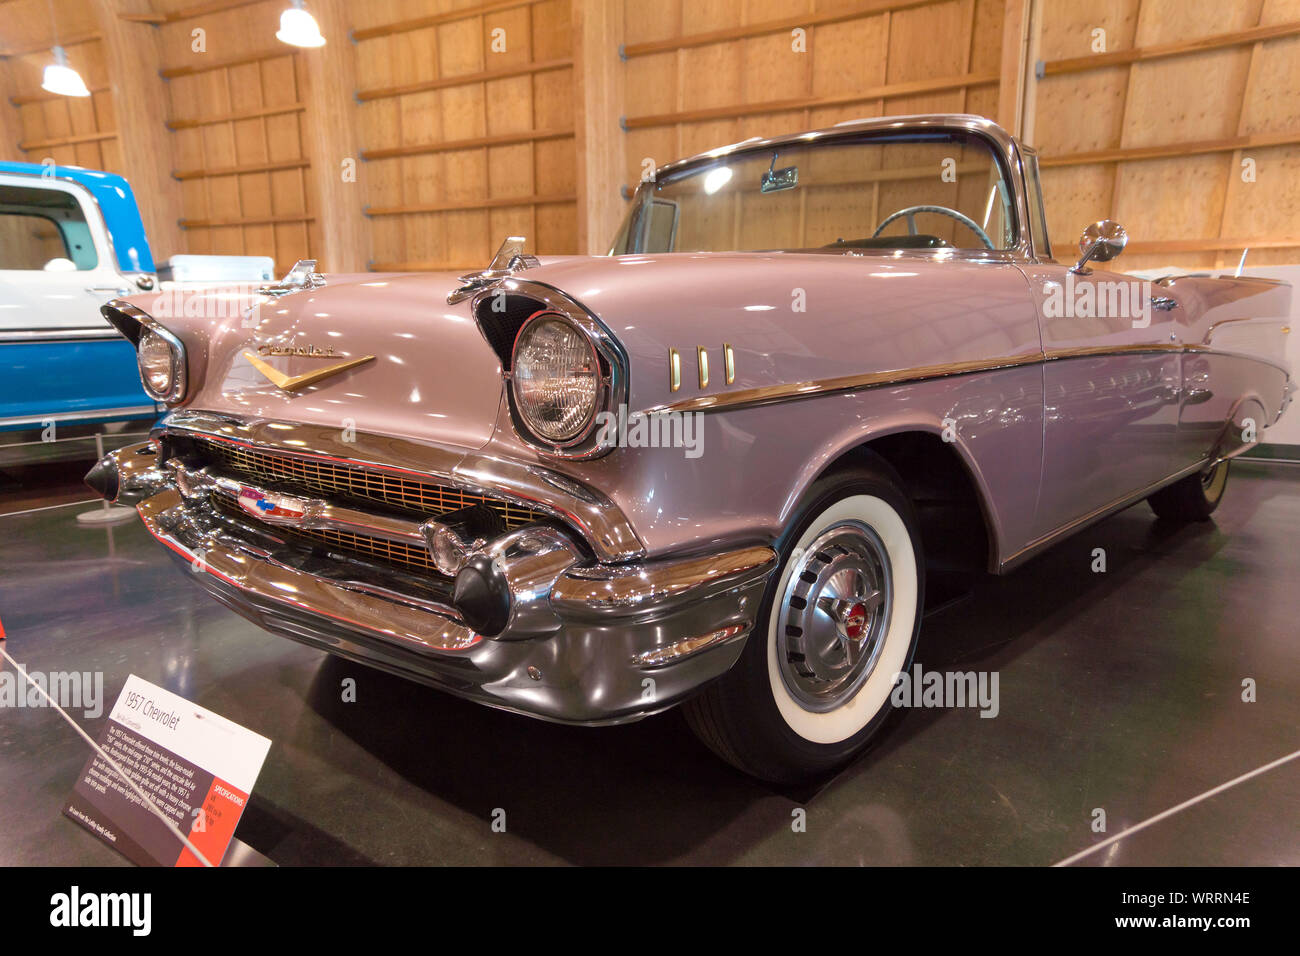 Chevrolet 1957, exposé au Musée de l'automobile américaine, Tacoma, Washington. Tacoma, Washington. 9 mai, 2015 Banque D'Images